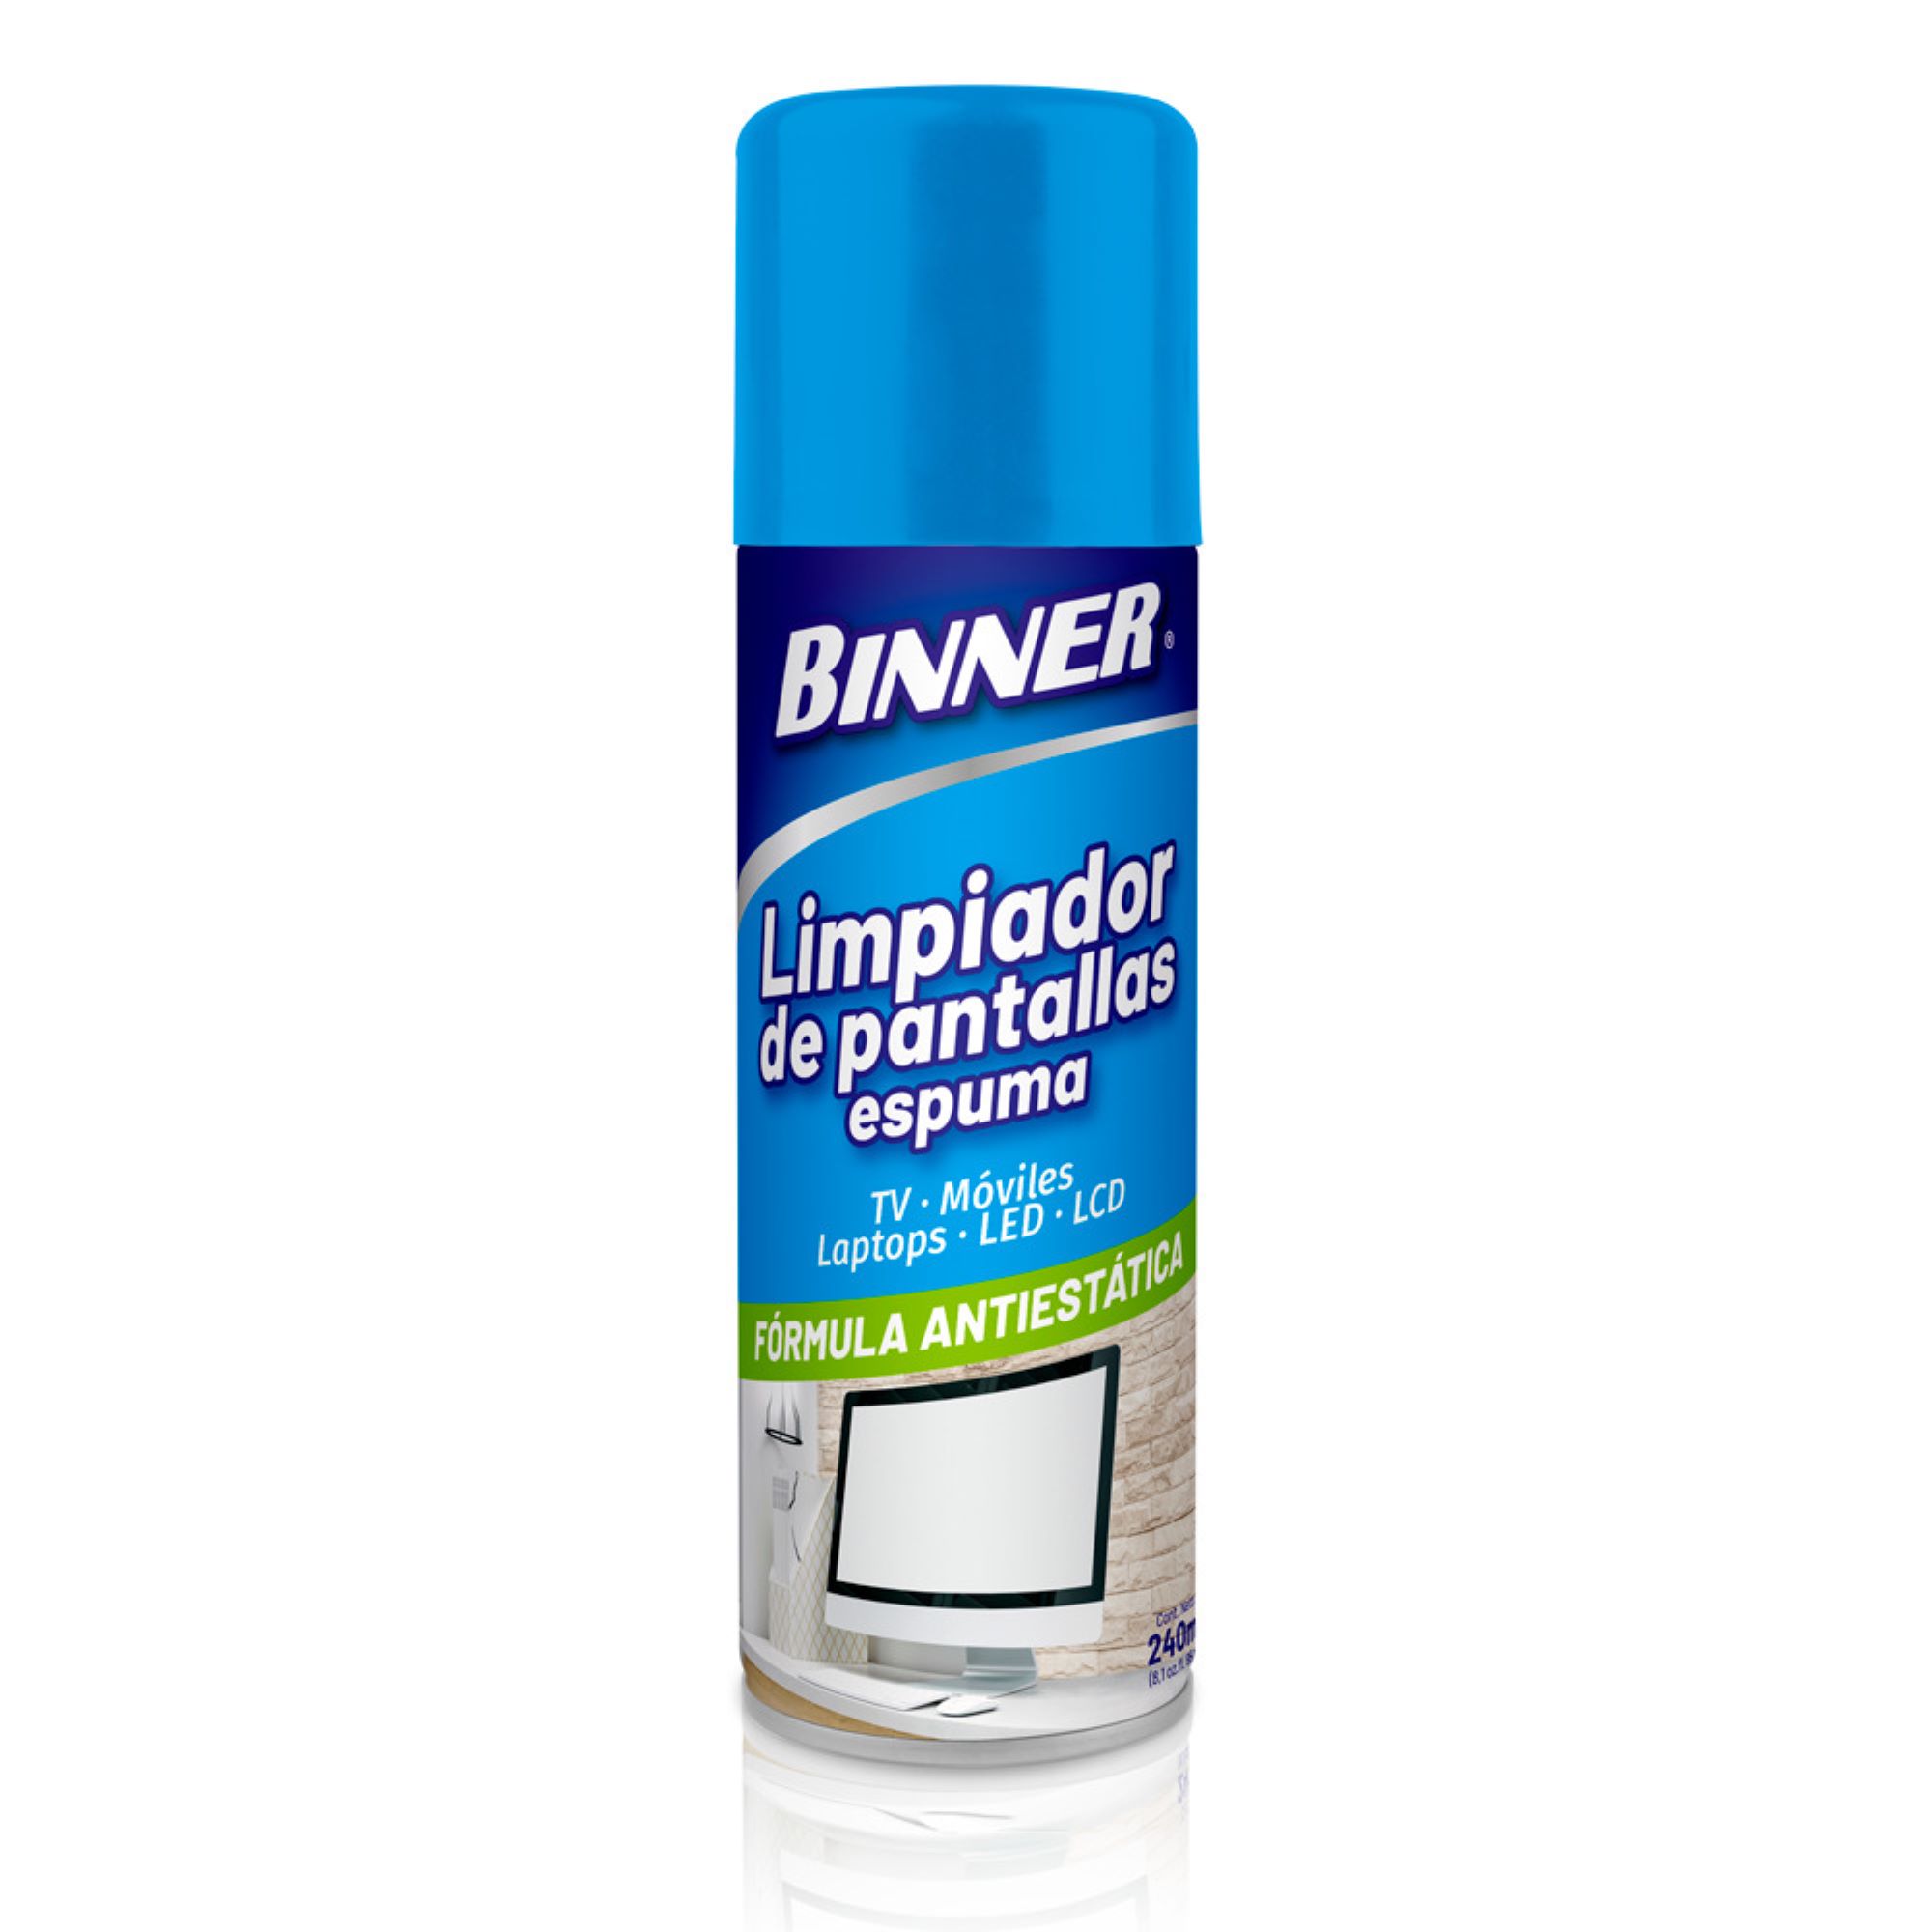 Limpiador de Pantallas BINNER Fórmula Antiestática Spray 240ml